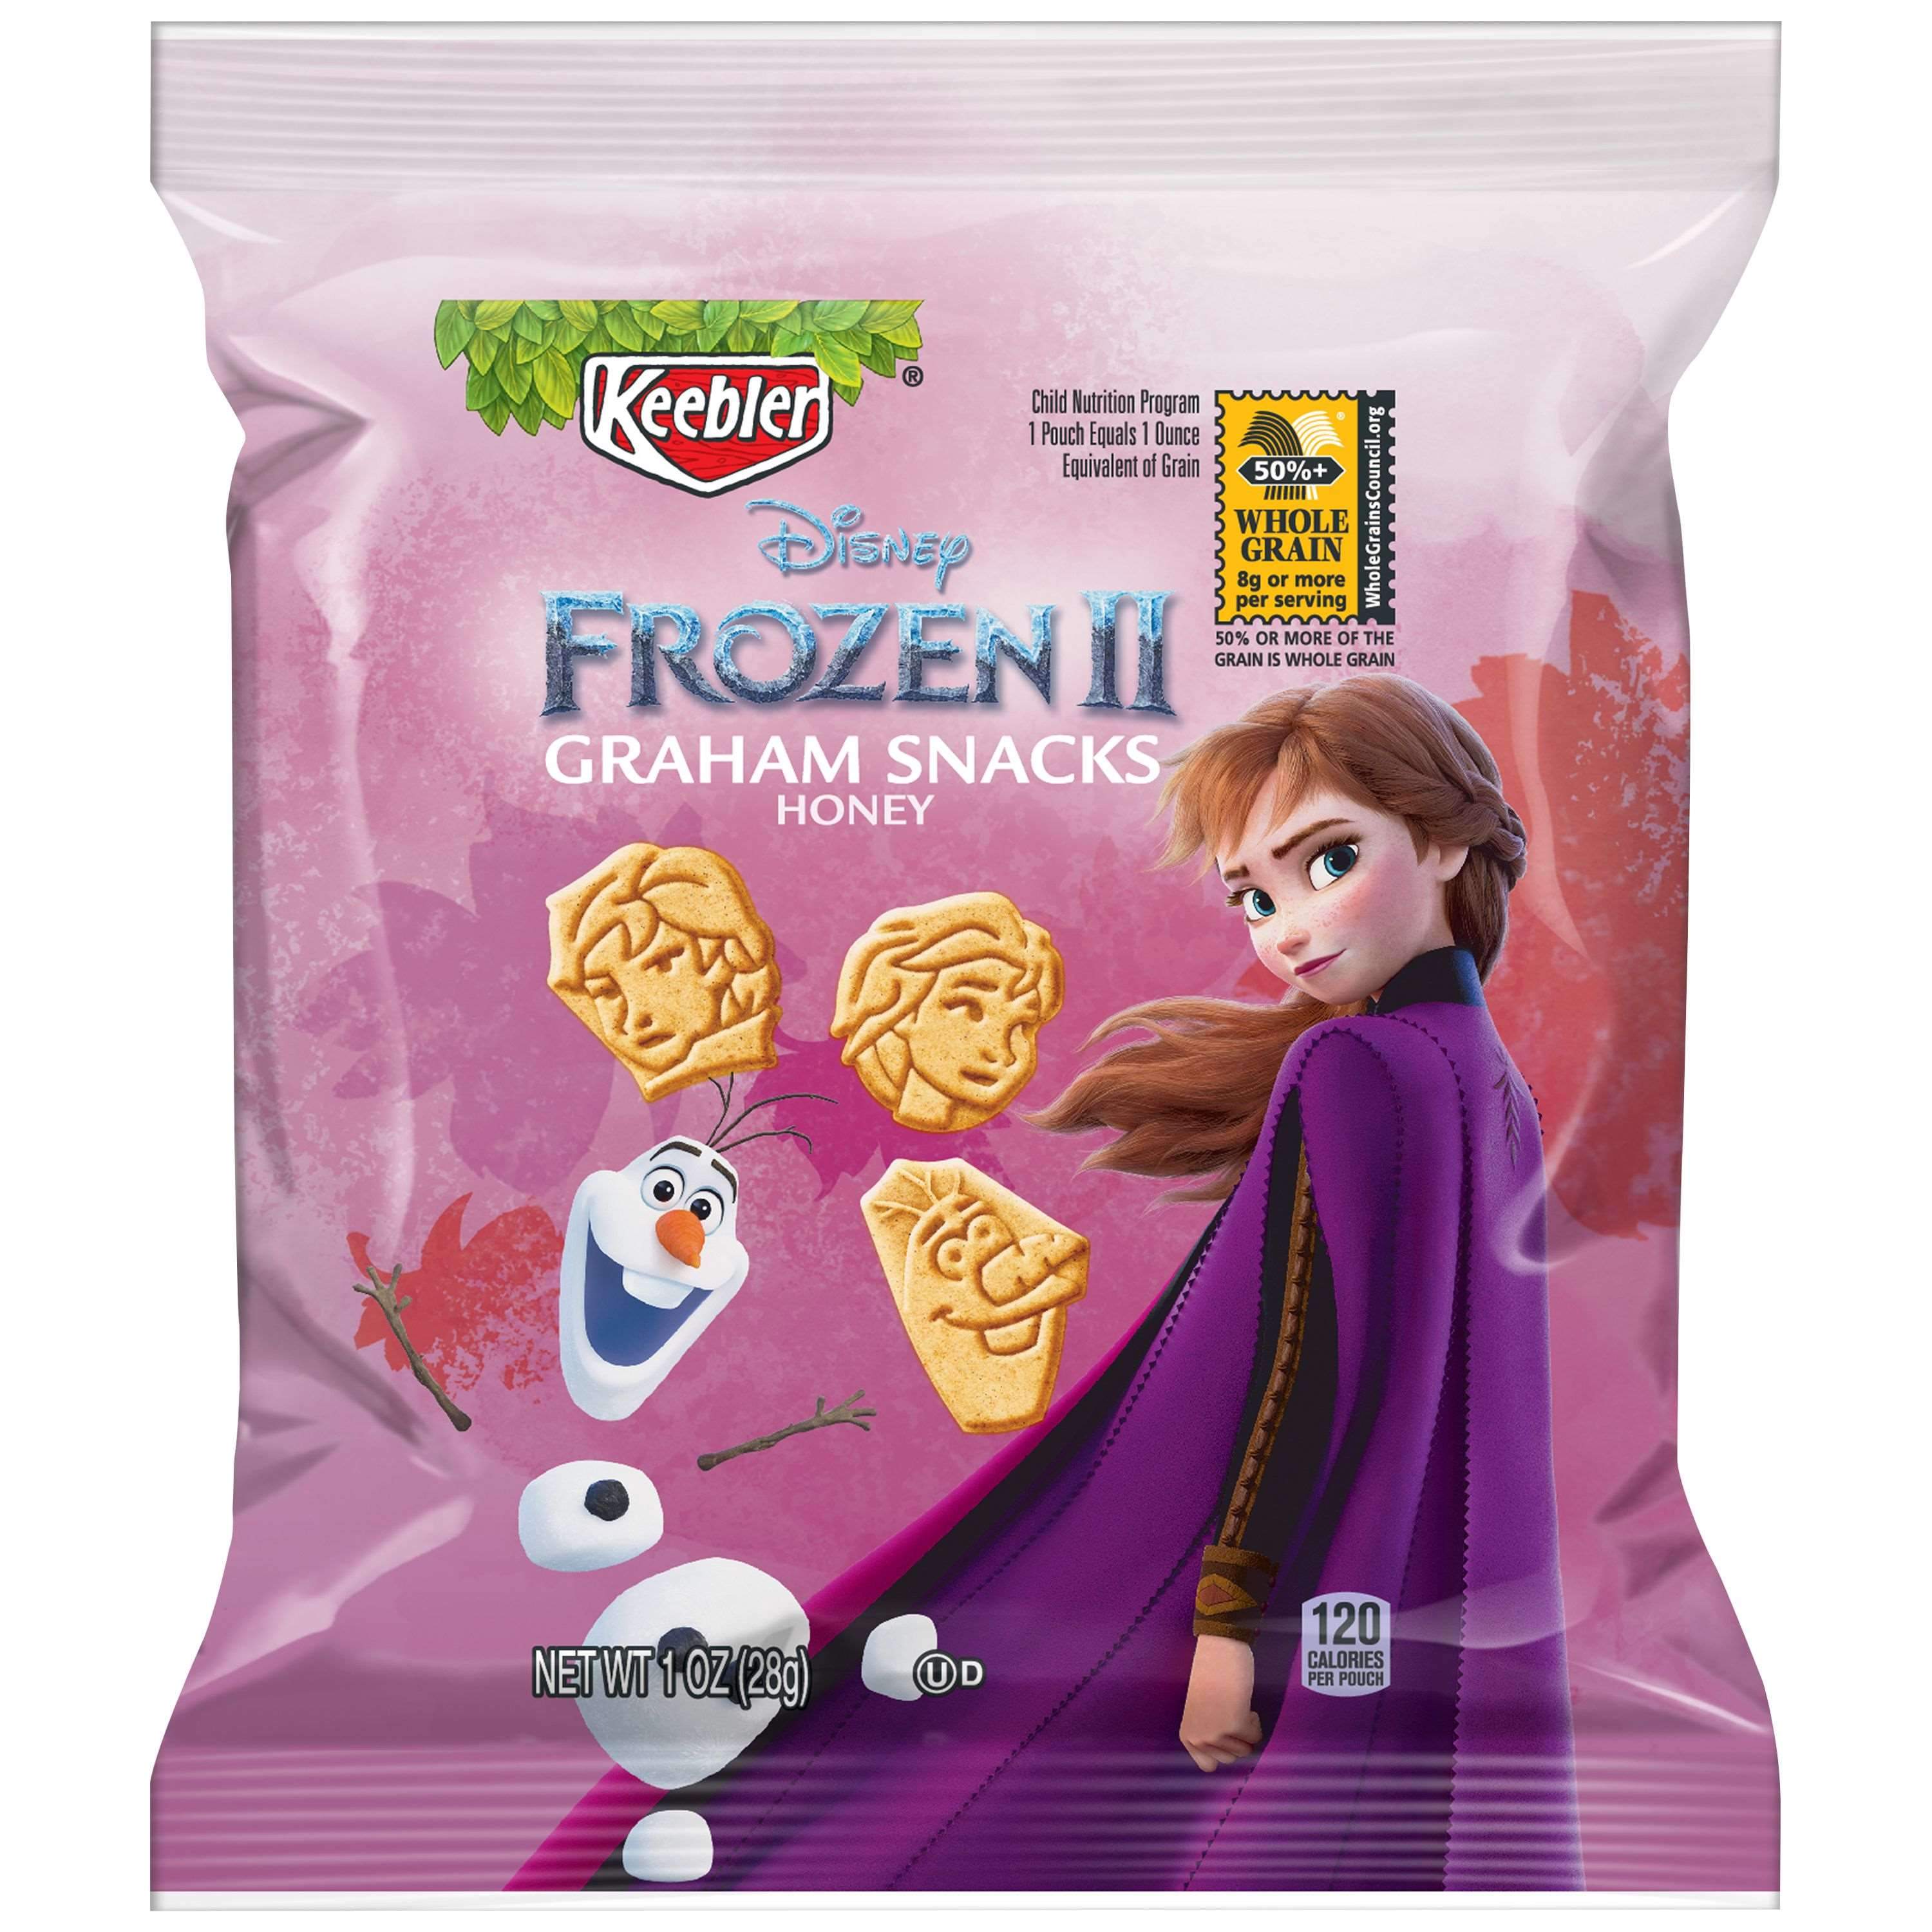 Keebler Graham Cracker Snack Packs Keebler Frozen II 1 Ounce 